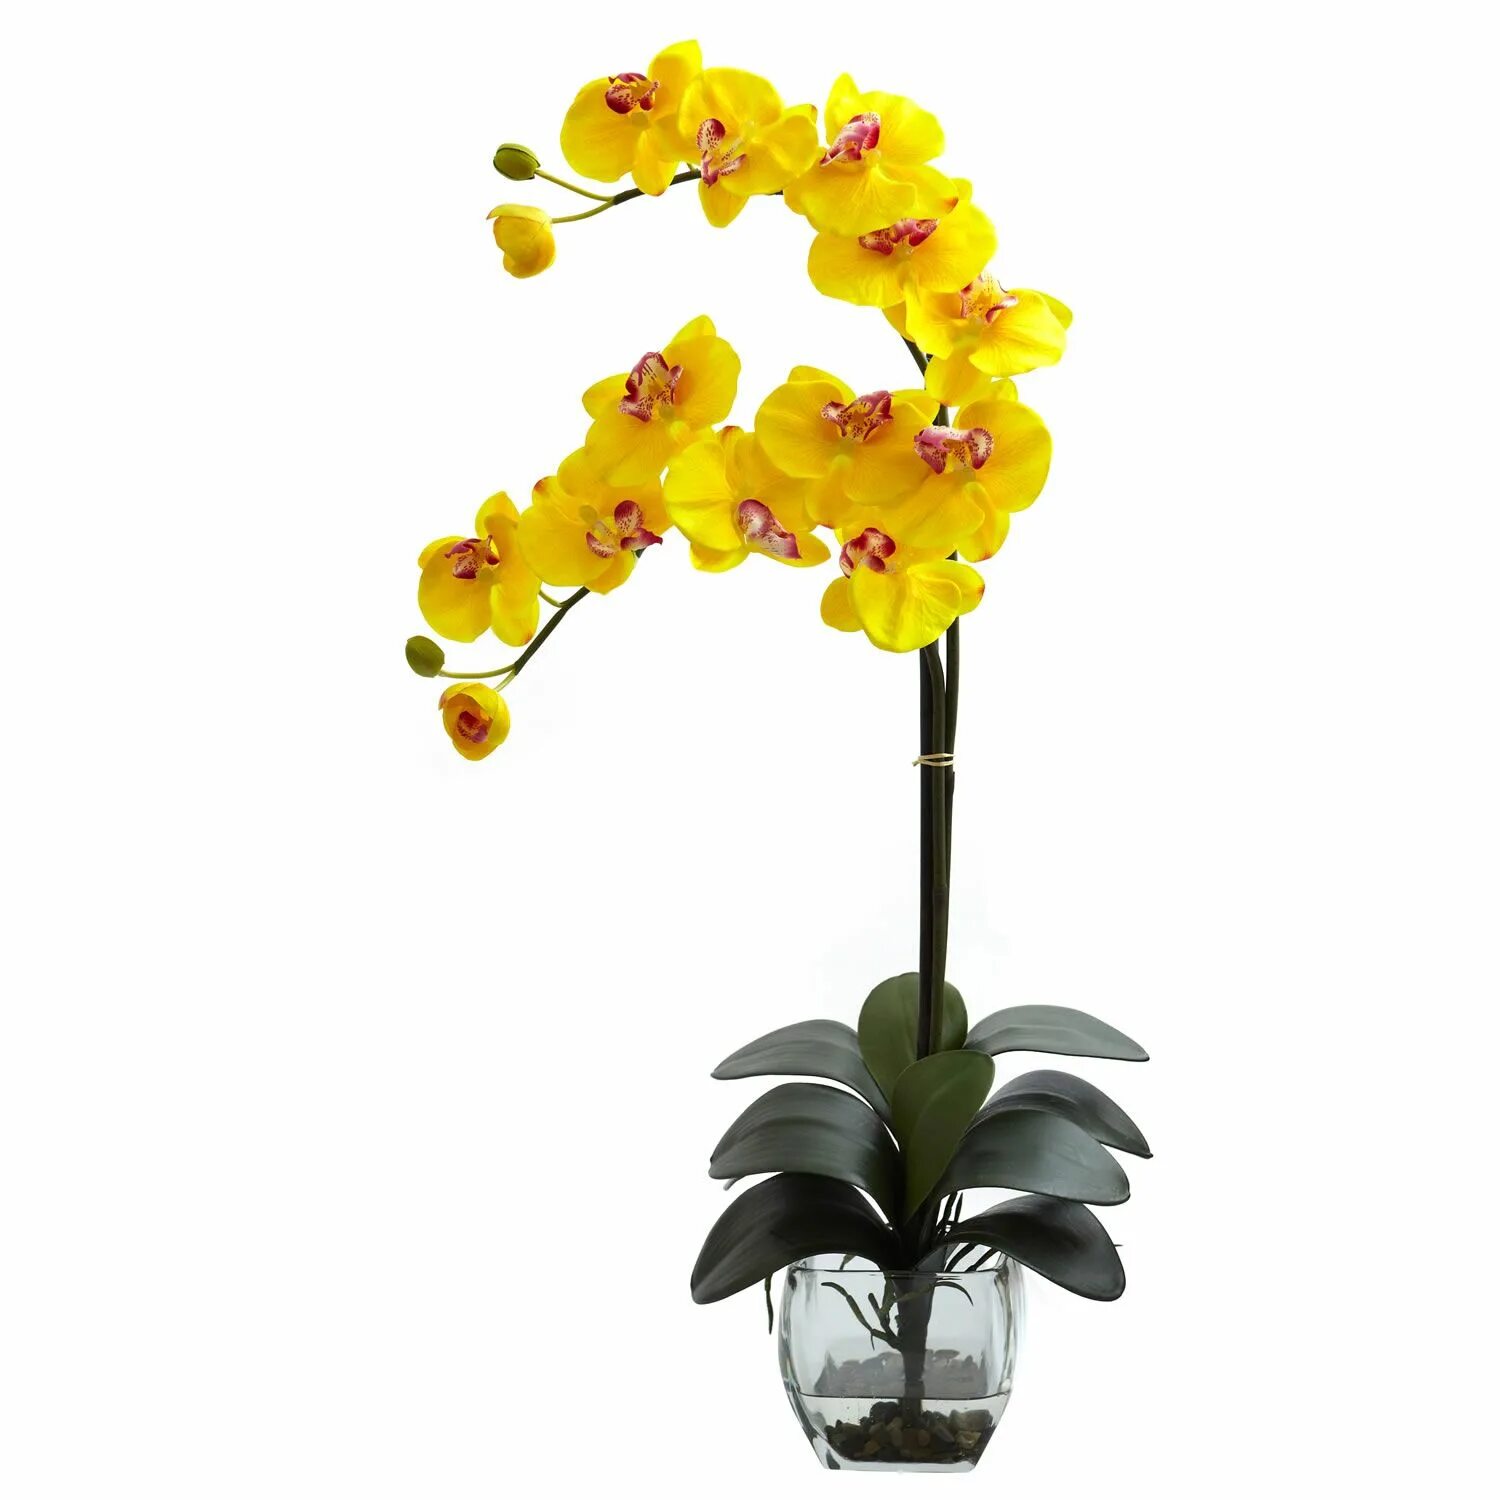 Купить желтую орхидею в горшке. Фаленопсис Еллоу Бьюти. Орхидея фаленопсис гигант. Орхидея фаленопсис одноствольная. Фаленопсис Каскад оранжевая.